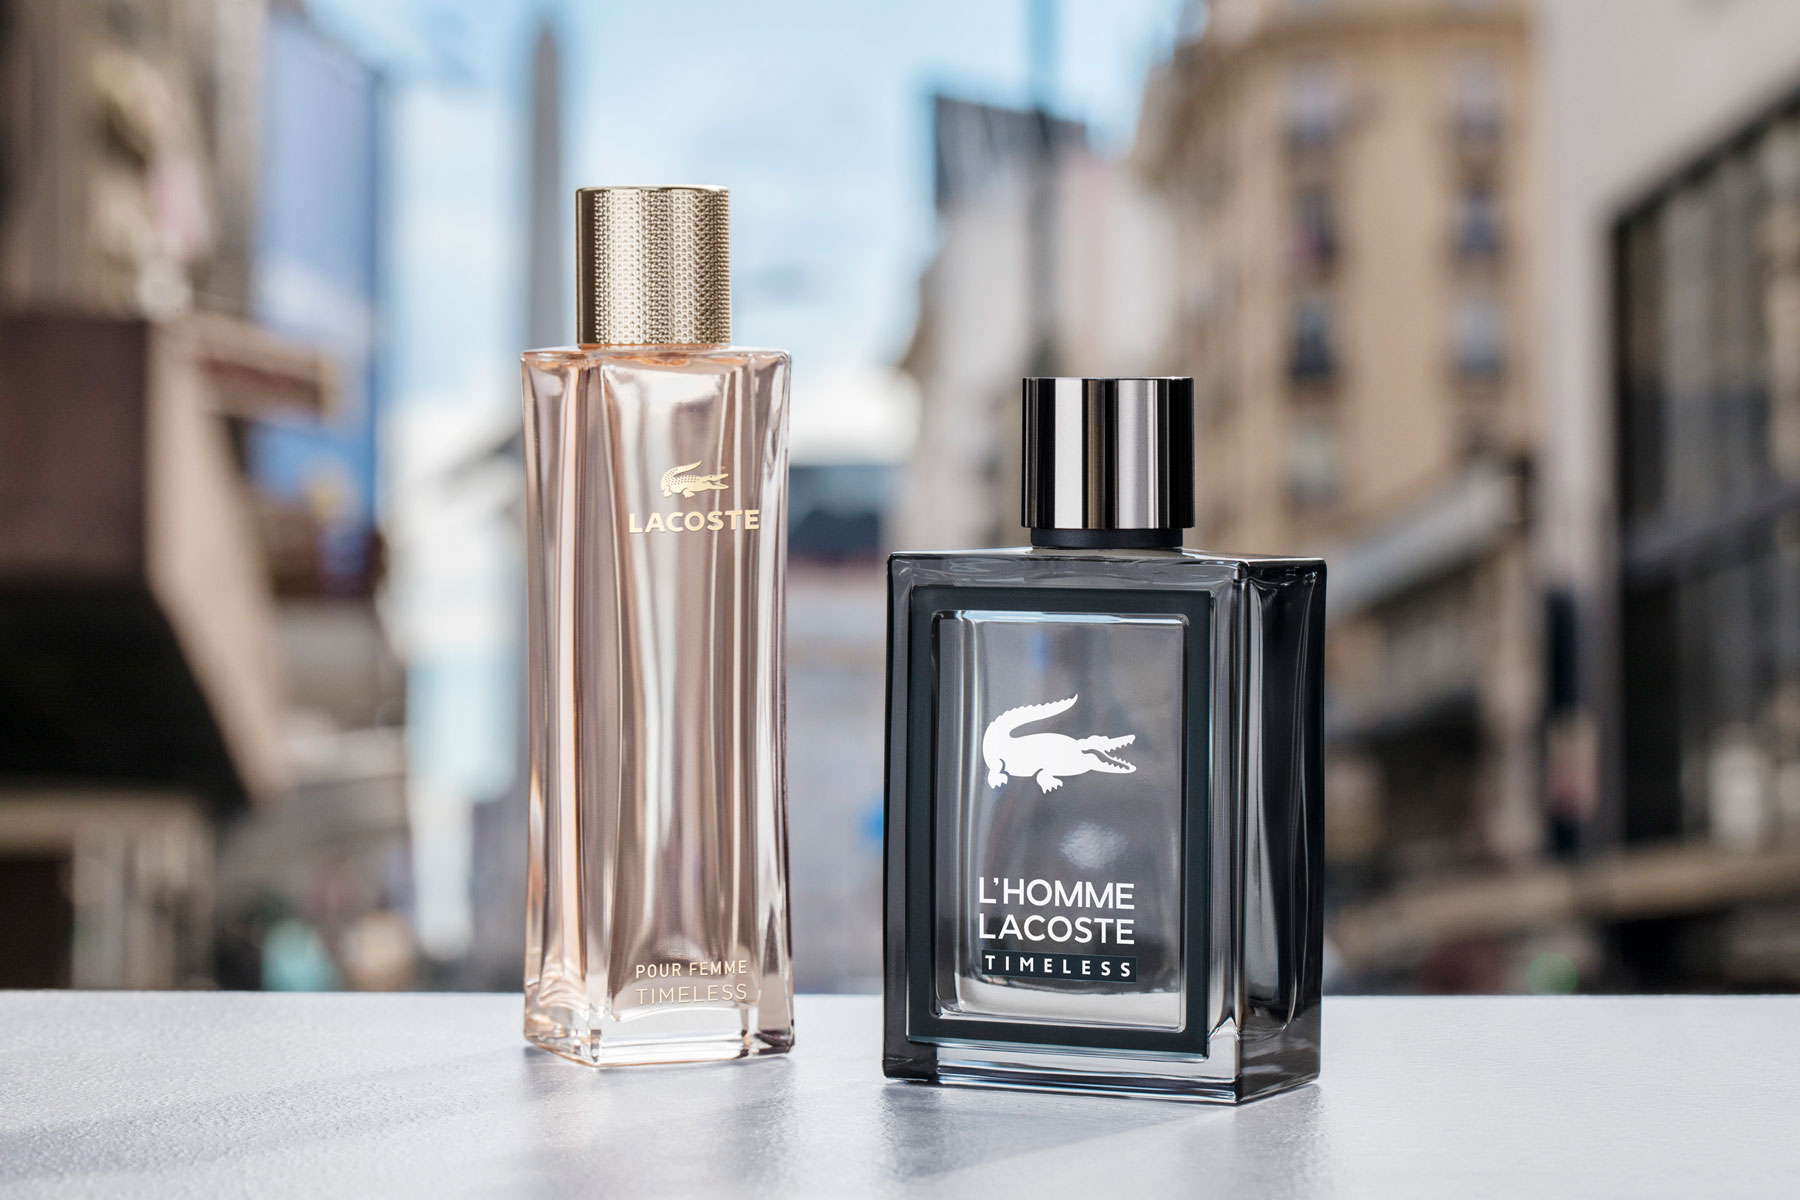 lacoste perfume 2019